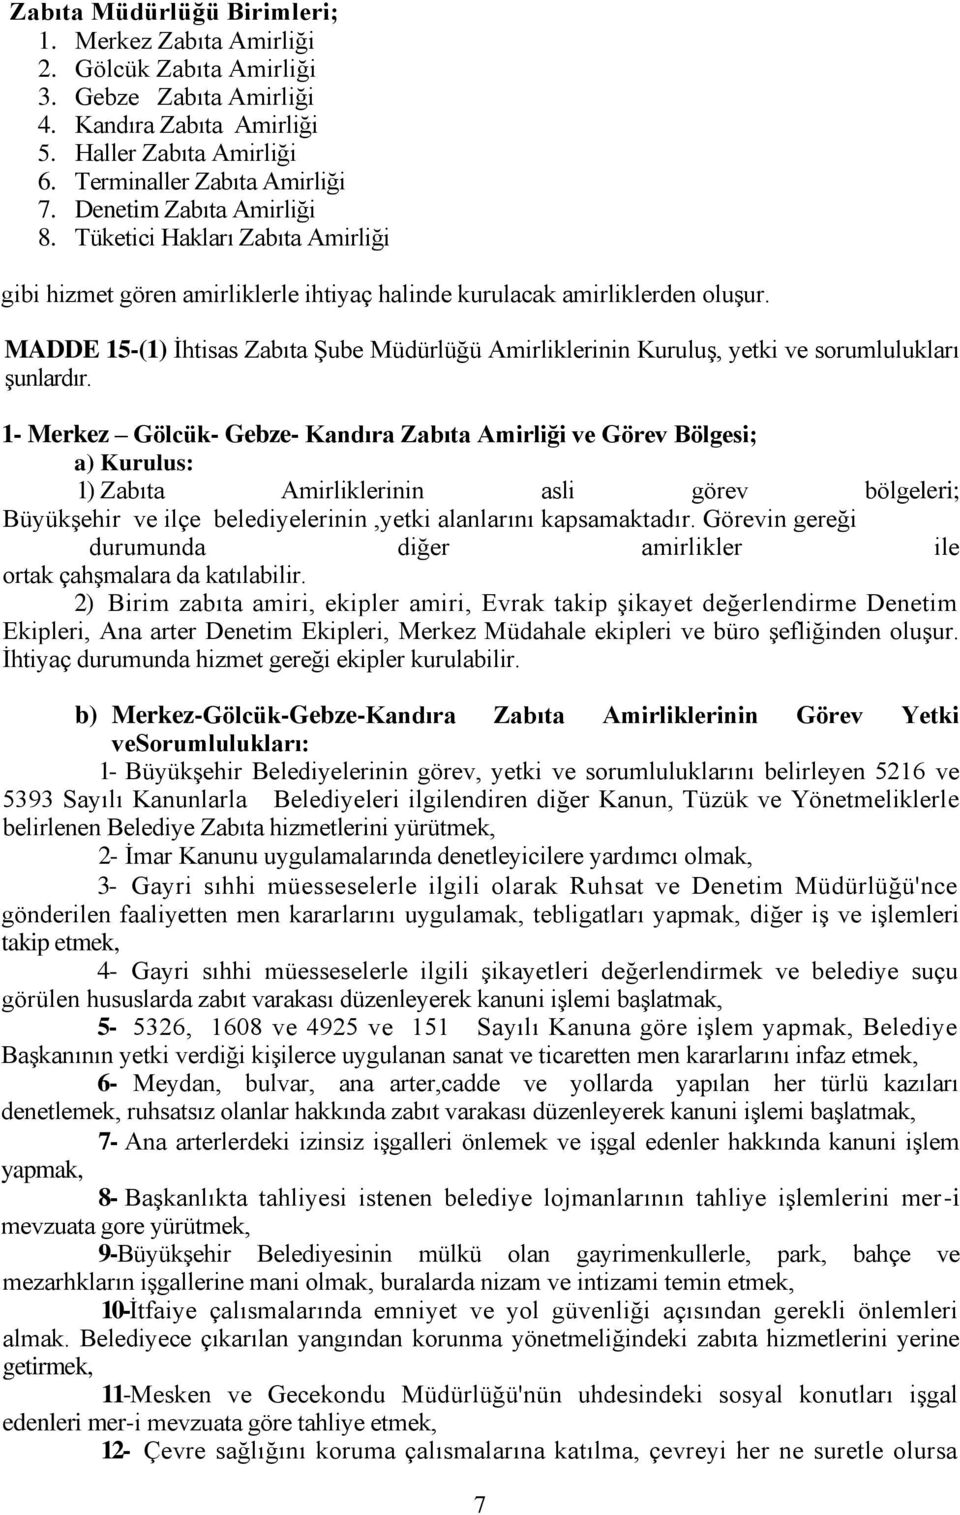 MADDE 15-(1) İhtisas Zabıta Şube Müdürlüğü Amirliklerinin Kuruluş, yetki ve sorumlulukları şunlardır.